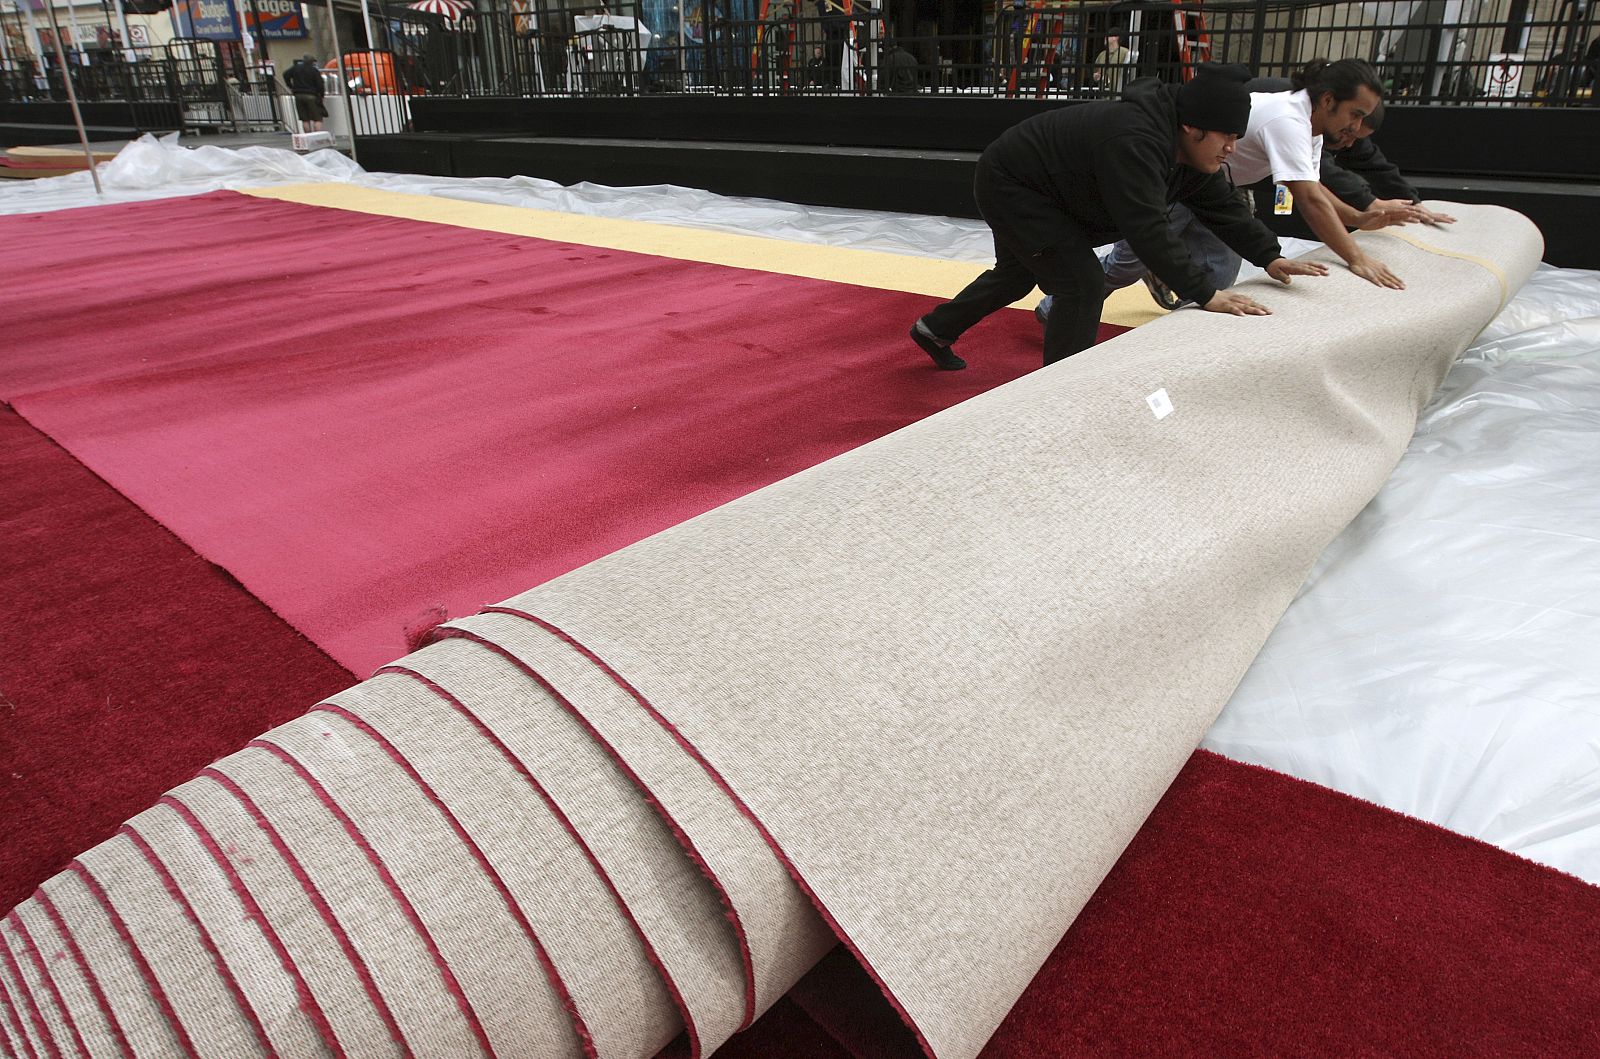 Unos trabajadores desenrollan la alfombra roja sobre la que luego pisarán las estrellas.